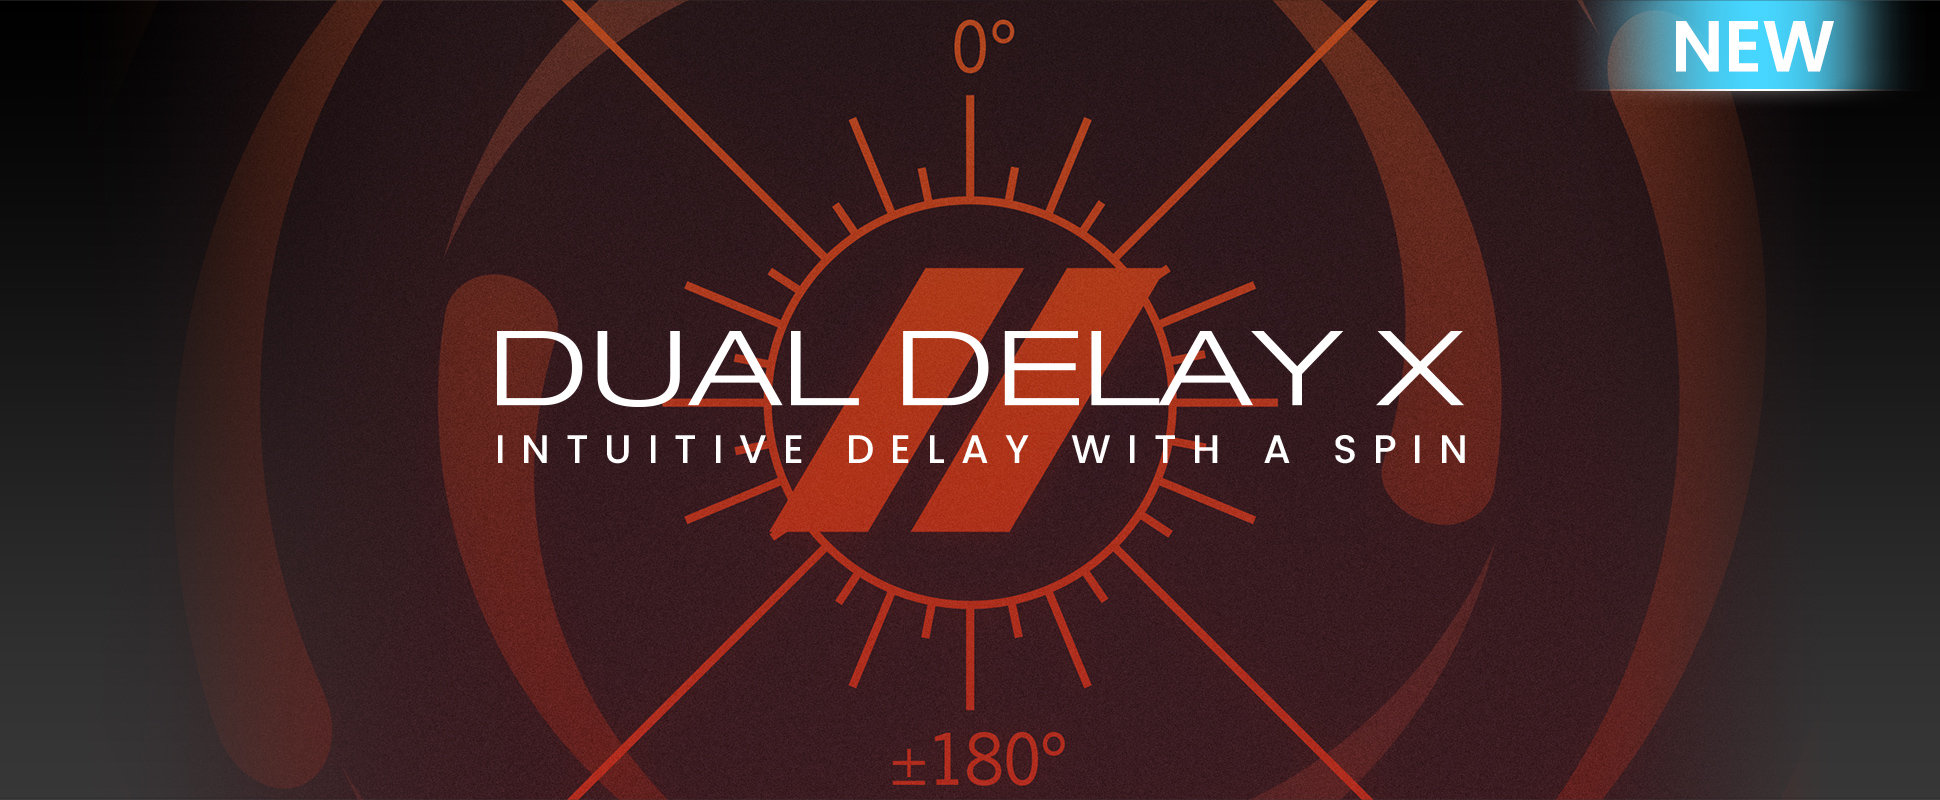 Dual Delay X - New